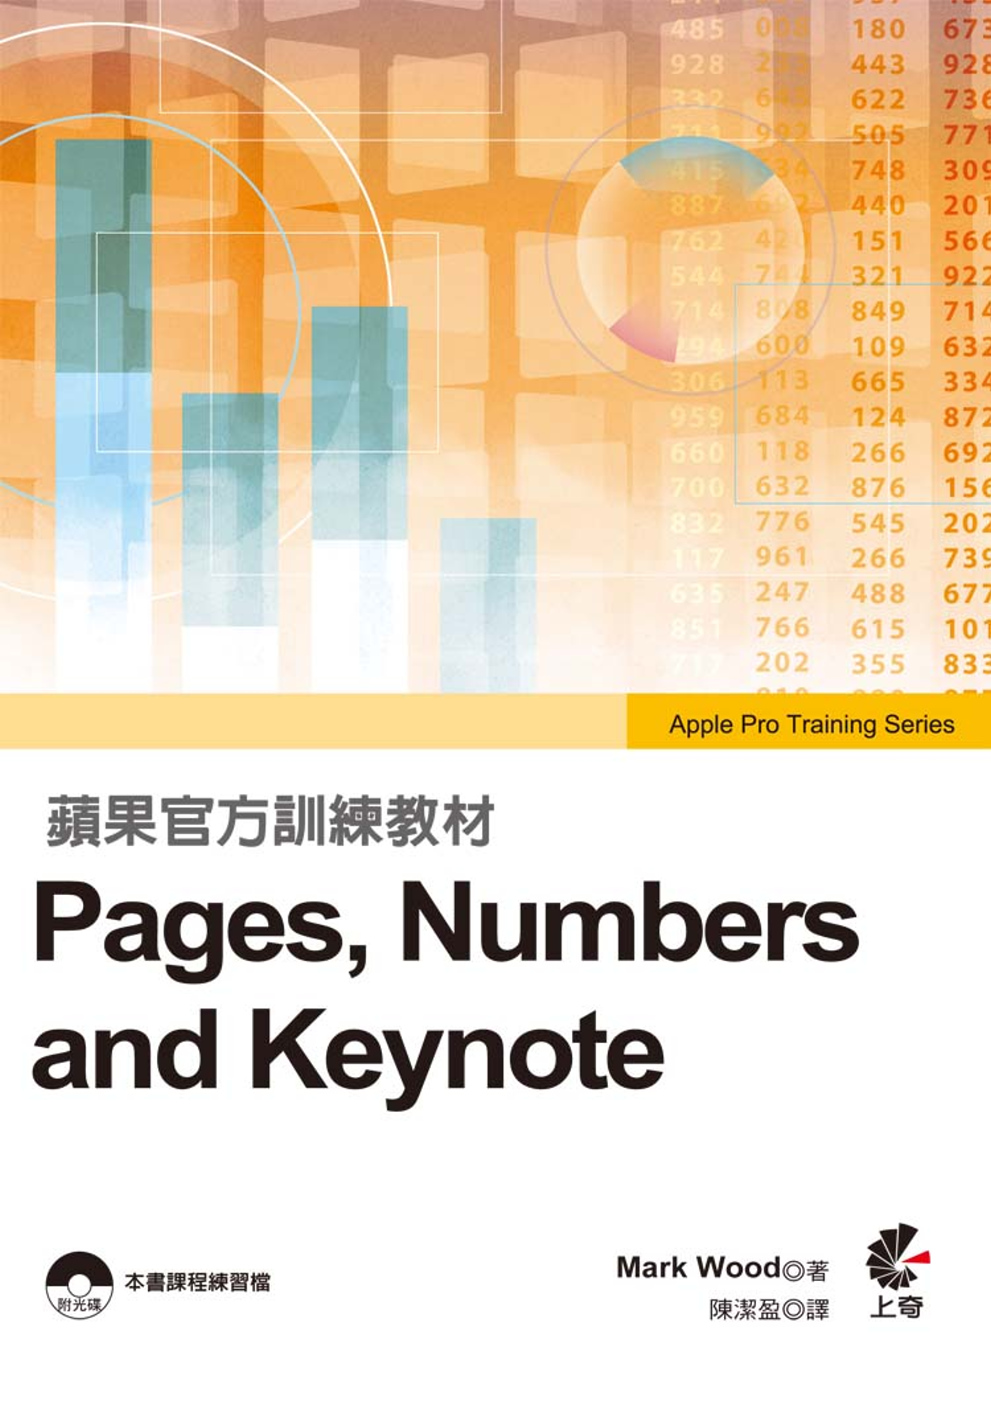 蘋果官方訓練教材 Pages, Numbers and Ke...